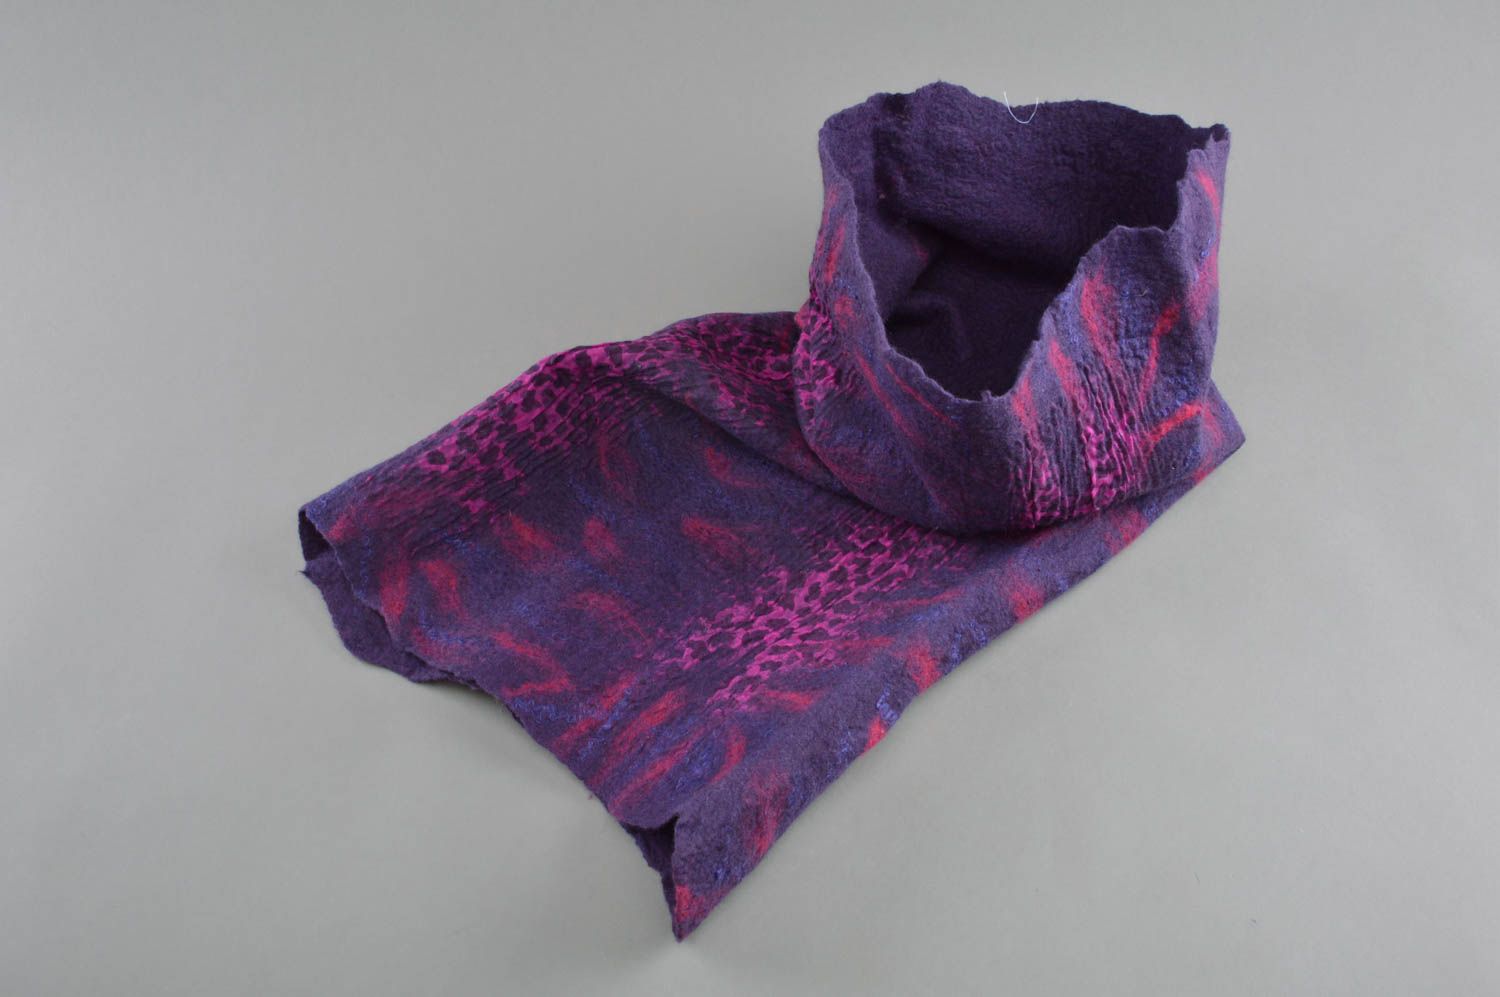 Шарф в технике валяния из шерсти и шелка фиолетовый темный стильный хэнд мейд фото 1